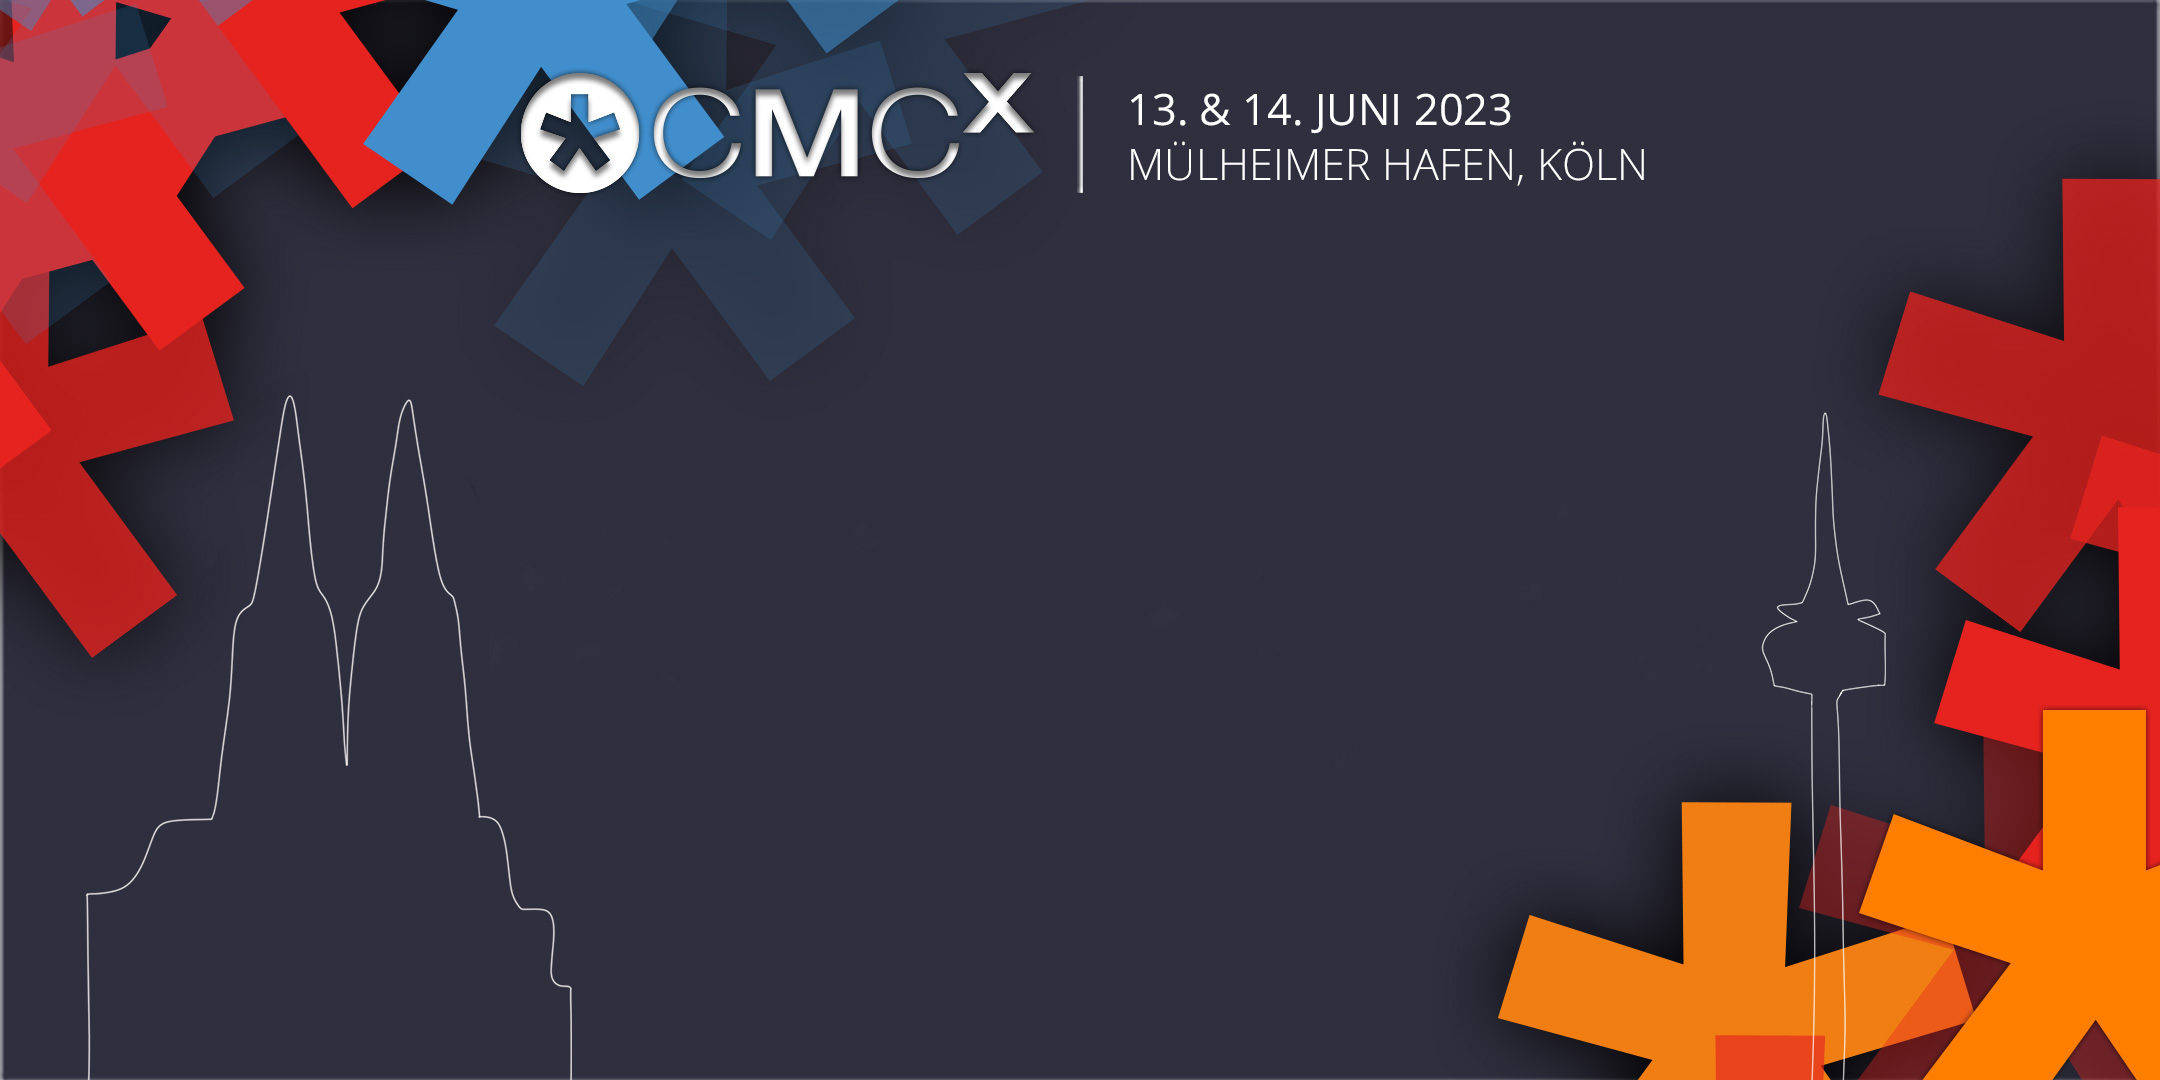 Das MMC ist auf der CMCX 2023 – wir sehen uns in Köln